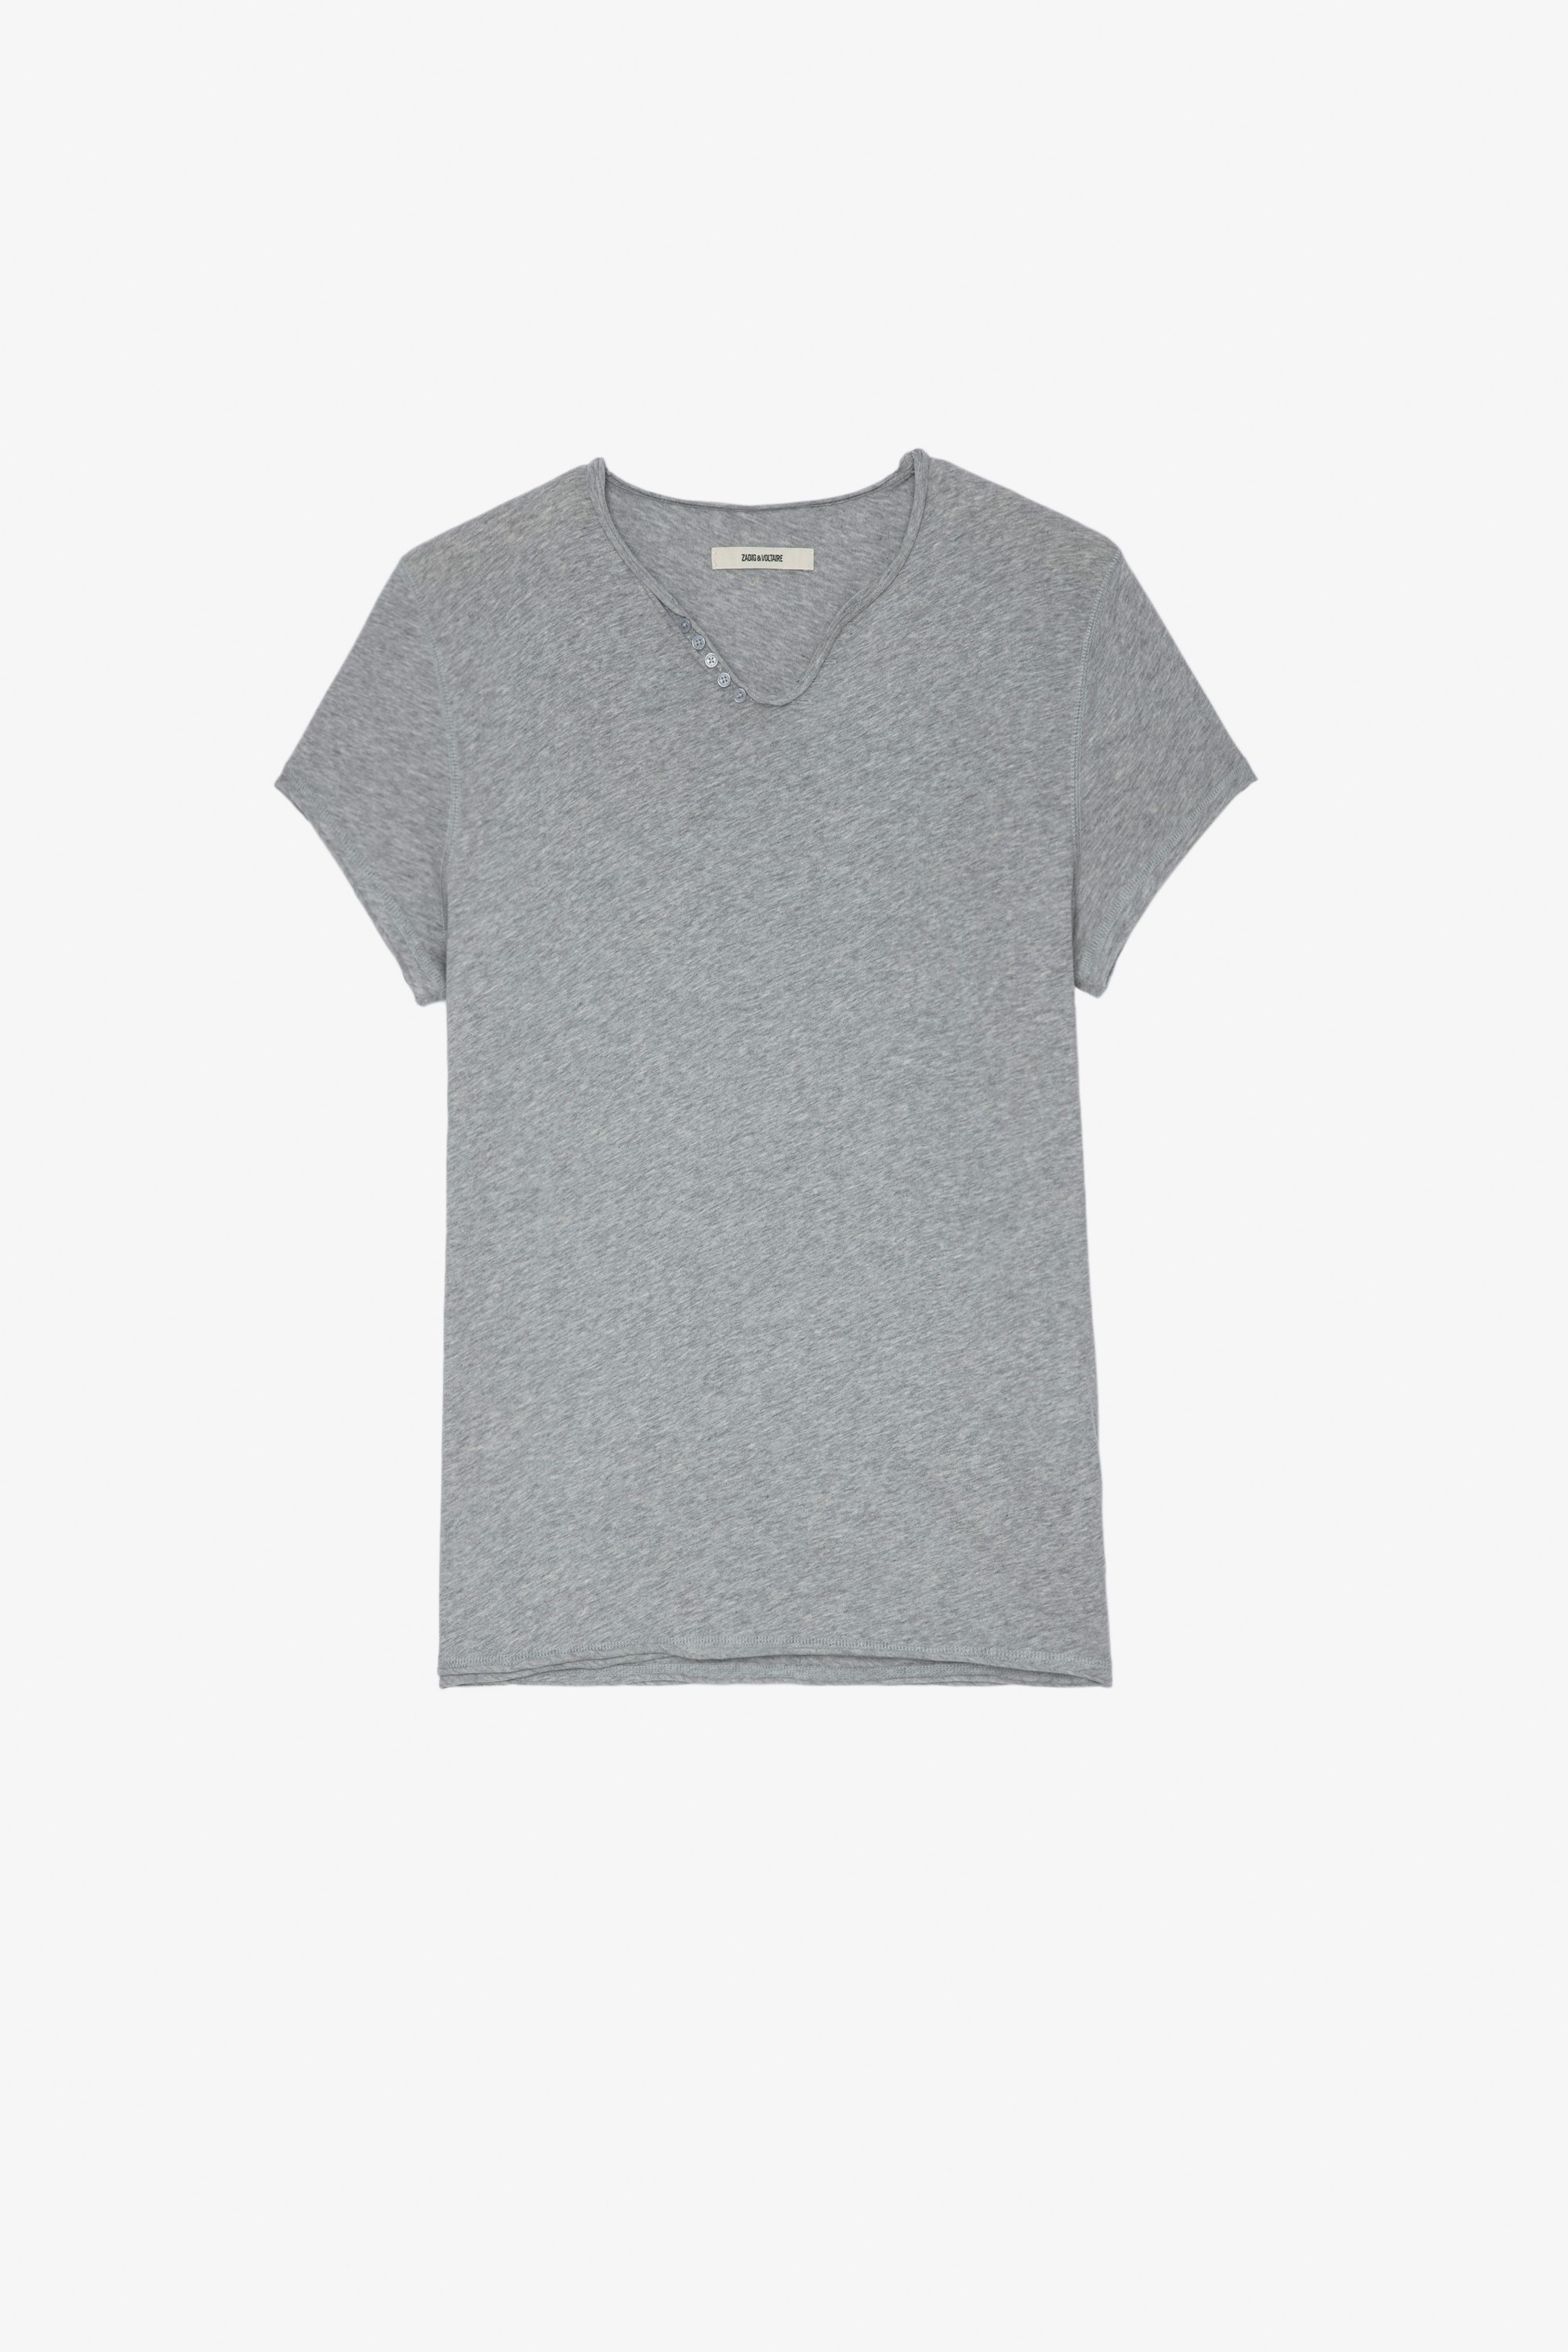 Camiseta Monastir Camiseta de algodón color gris jaspeado con cuello panadero y firma «Voltaire» Jormi en la espalda Hombre